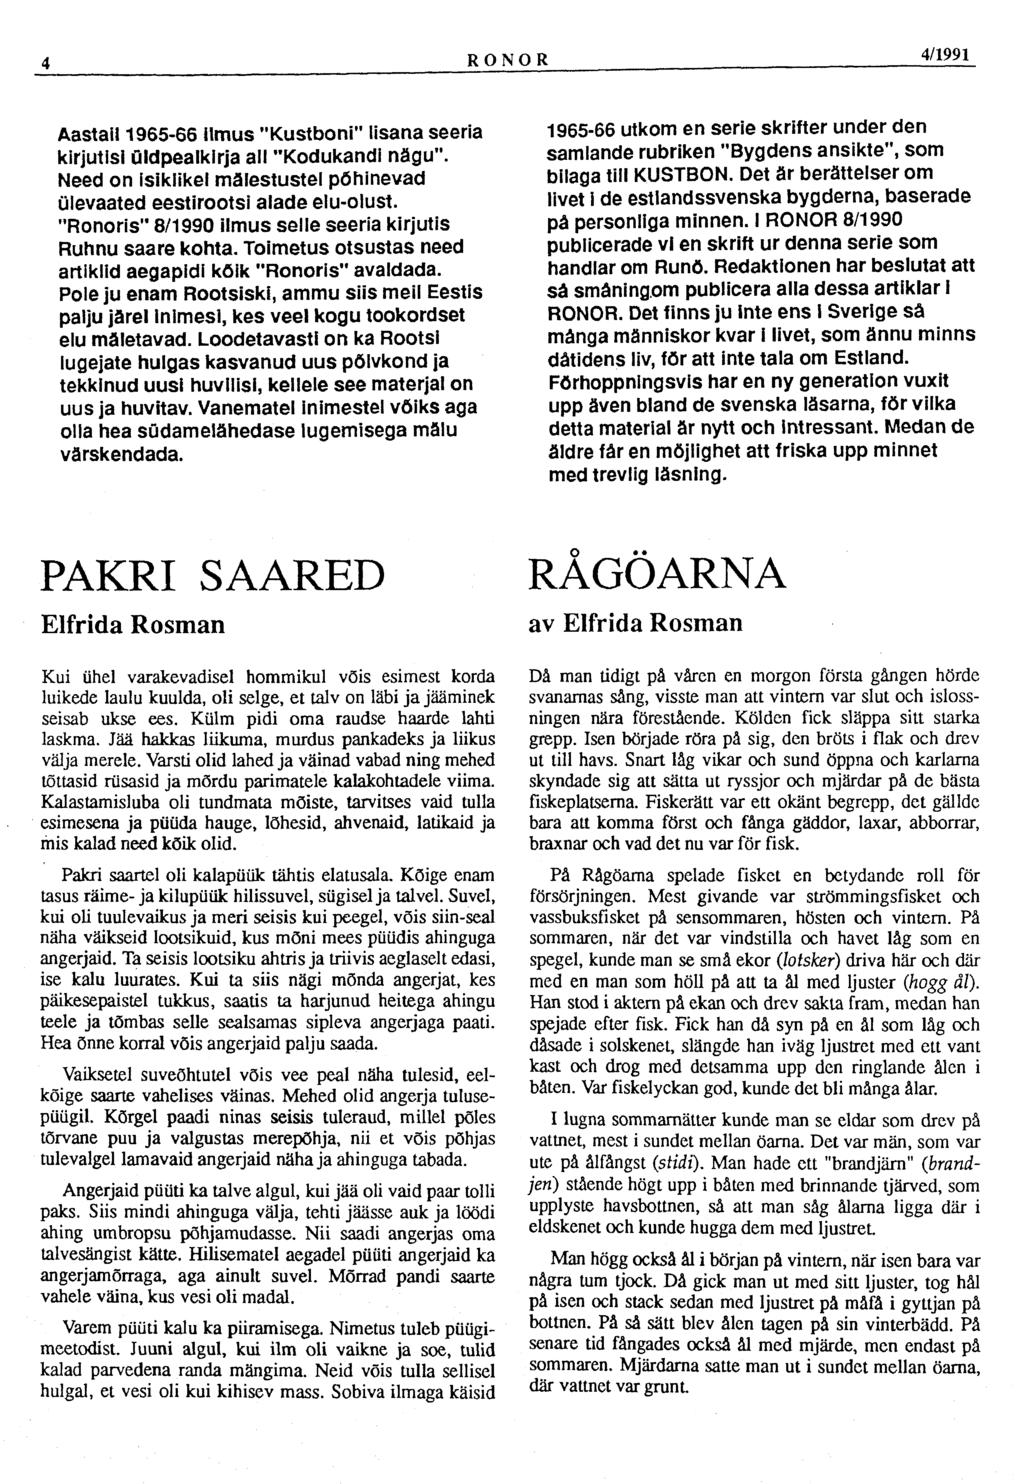 4 RONOR 4/1991 Aastail 1965-66 ilmus "Kustboni" lisana seeria kirjutisi üldpealkirja all "Kodukandi nägu". Need on isiklikel mälestustel põhinevad ülevaated eestirootsi alade elu-olust.